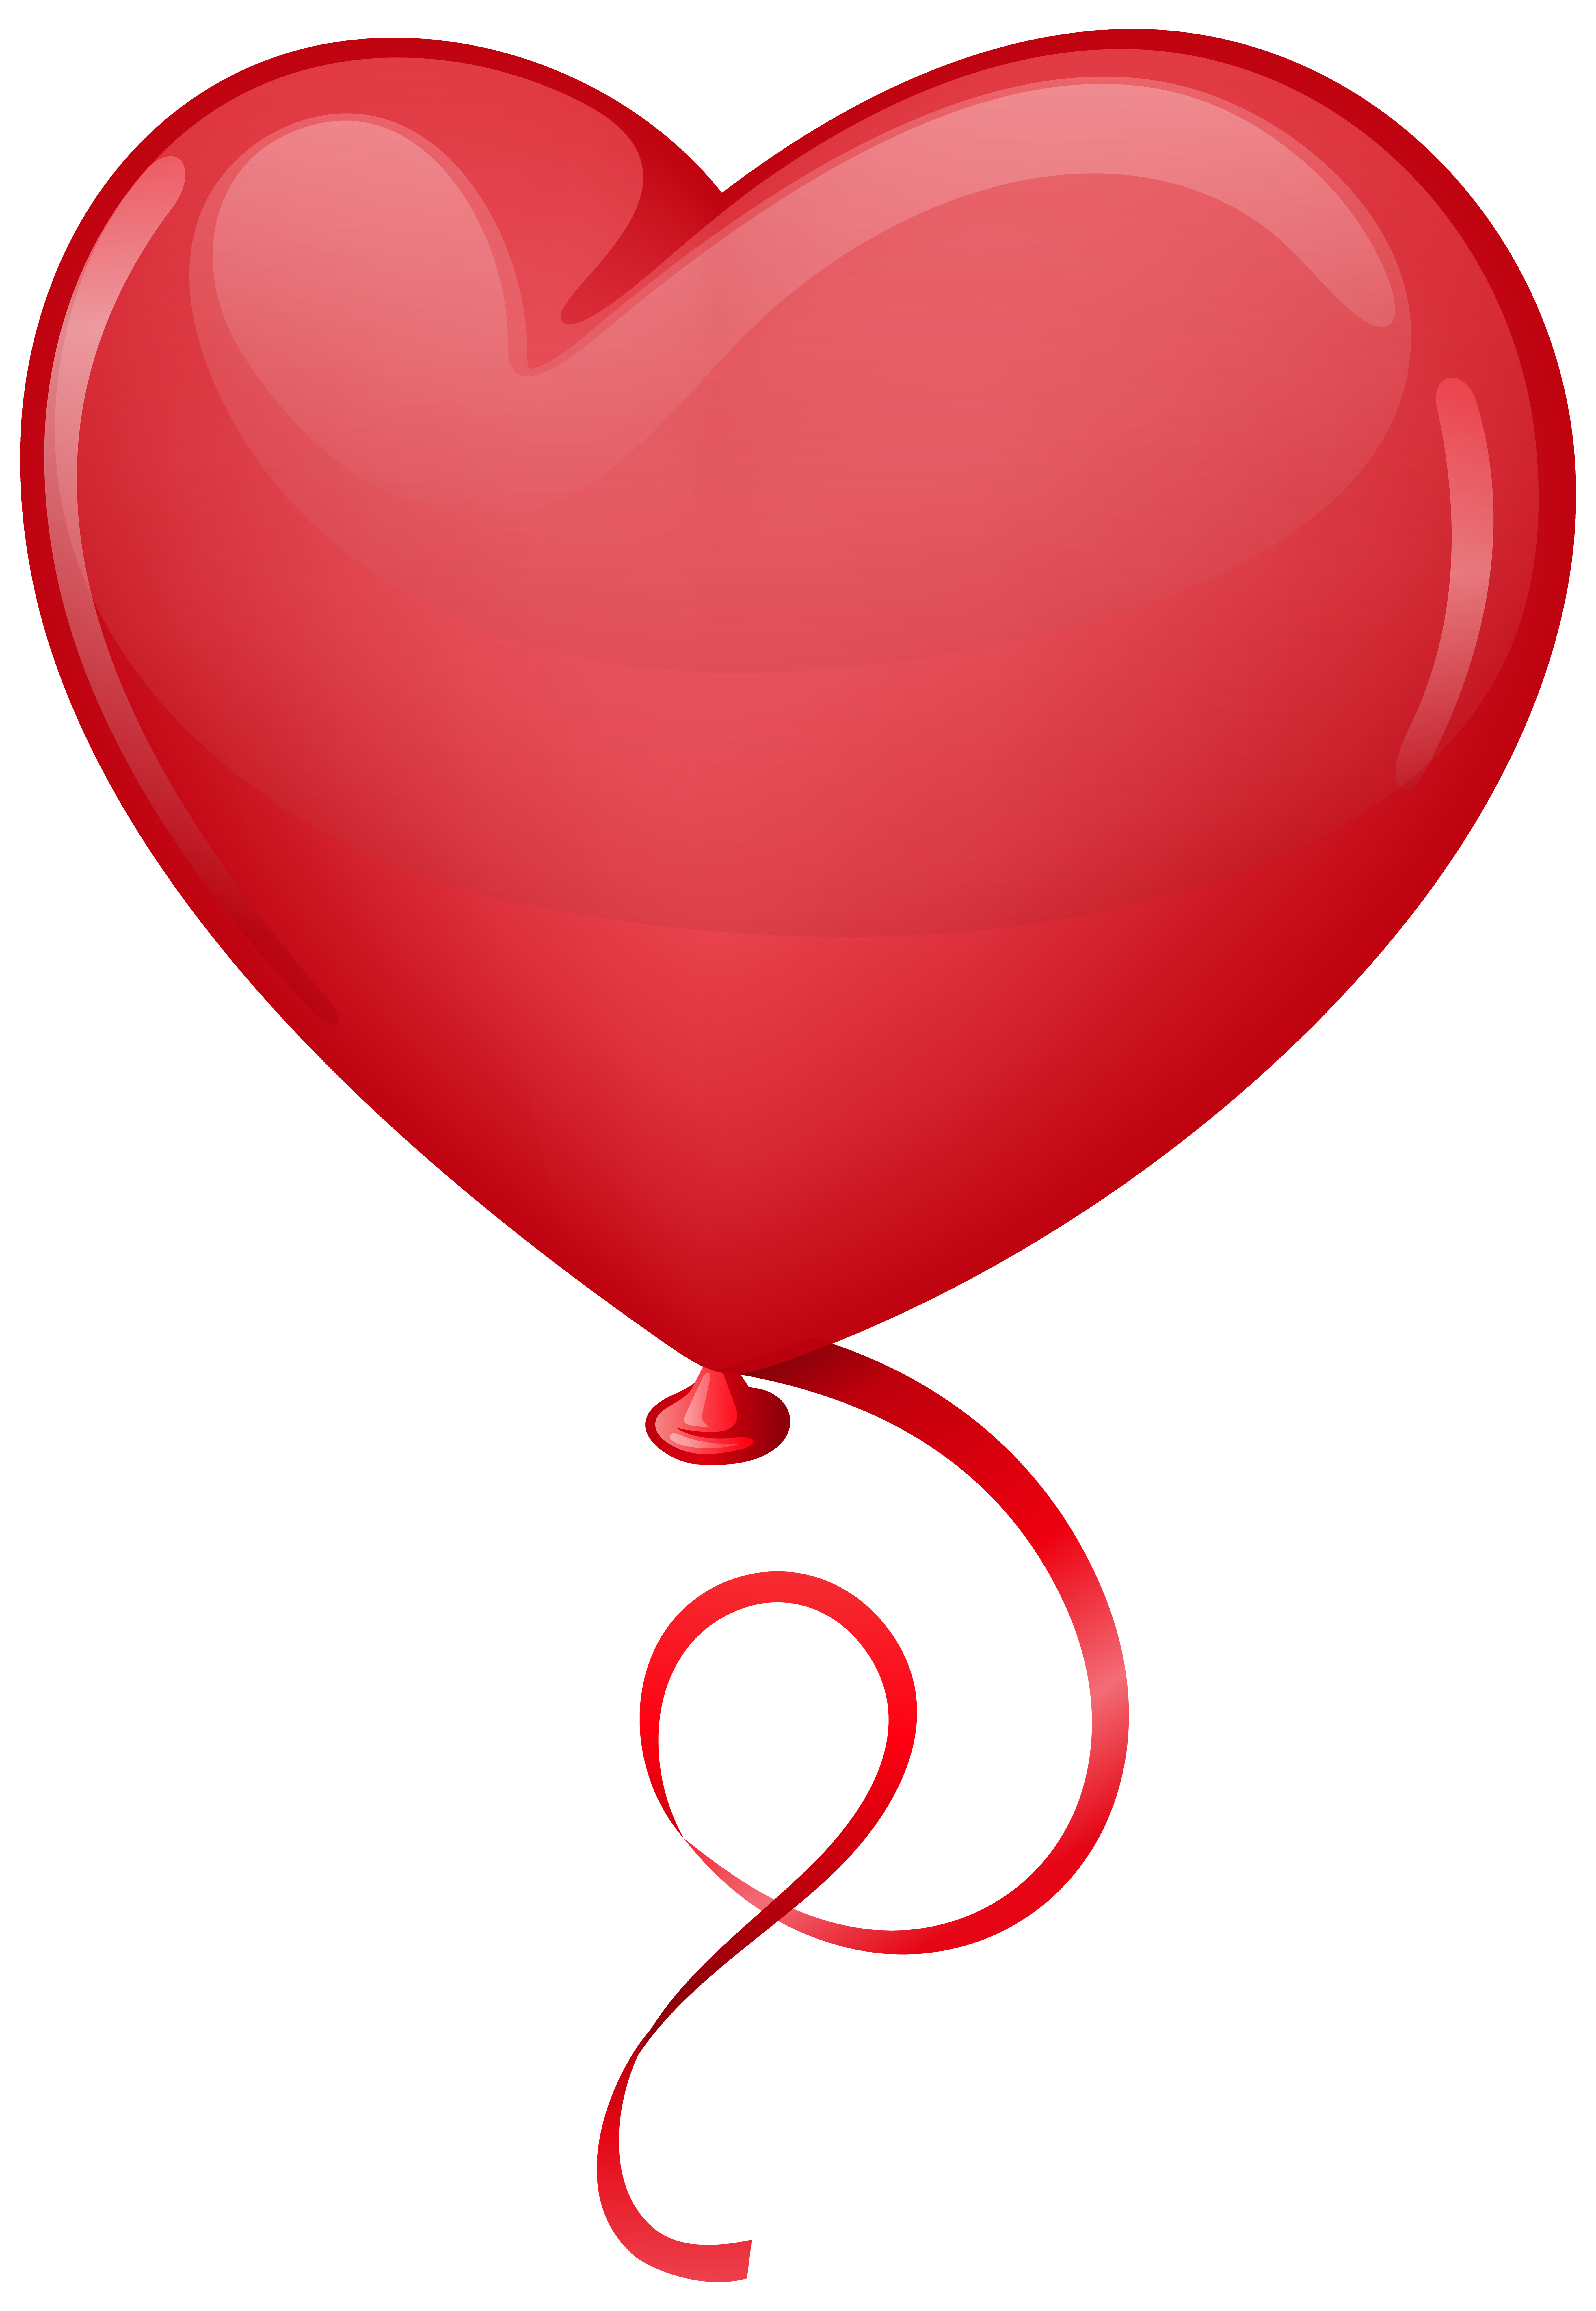 Balloon red clip art. Ballon clipart heart